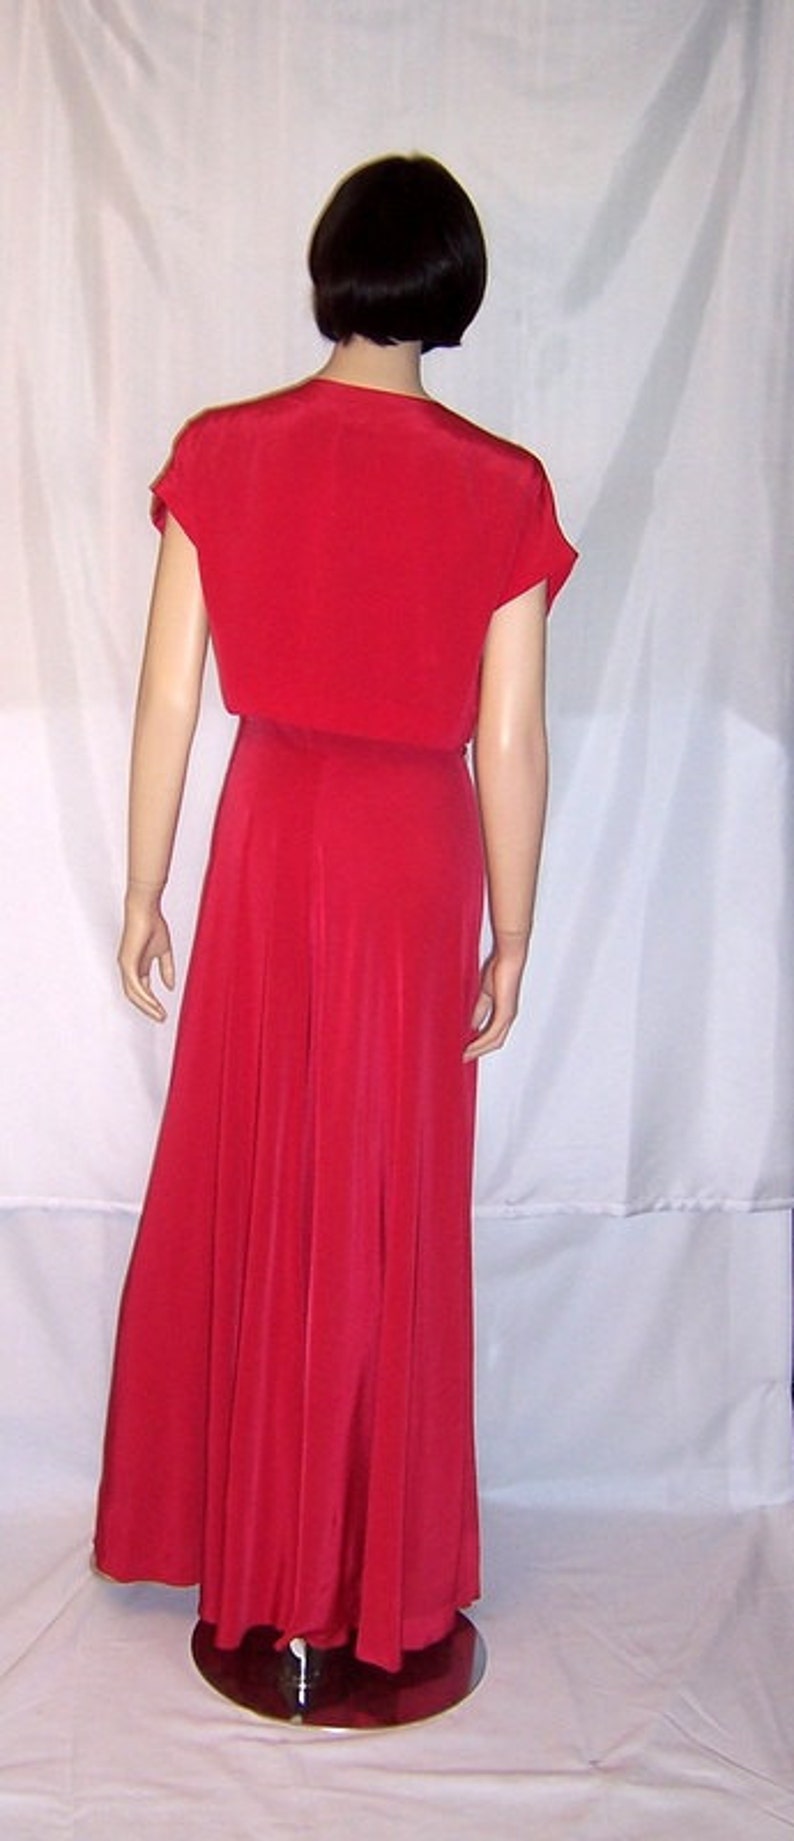 Early 1940's Cerise Red Sleeveless Gown with Embellished Bolero Jacket image 2